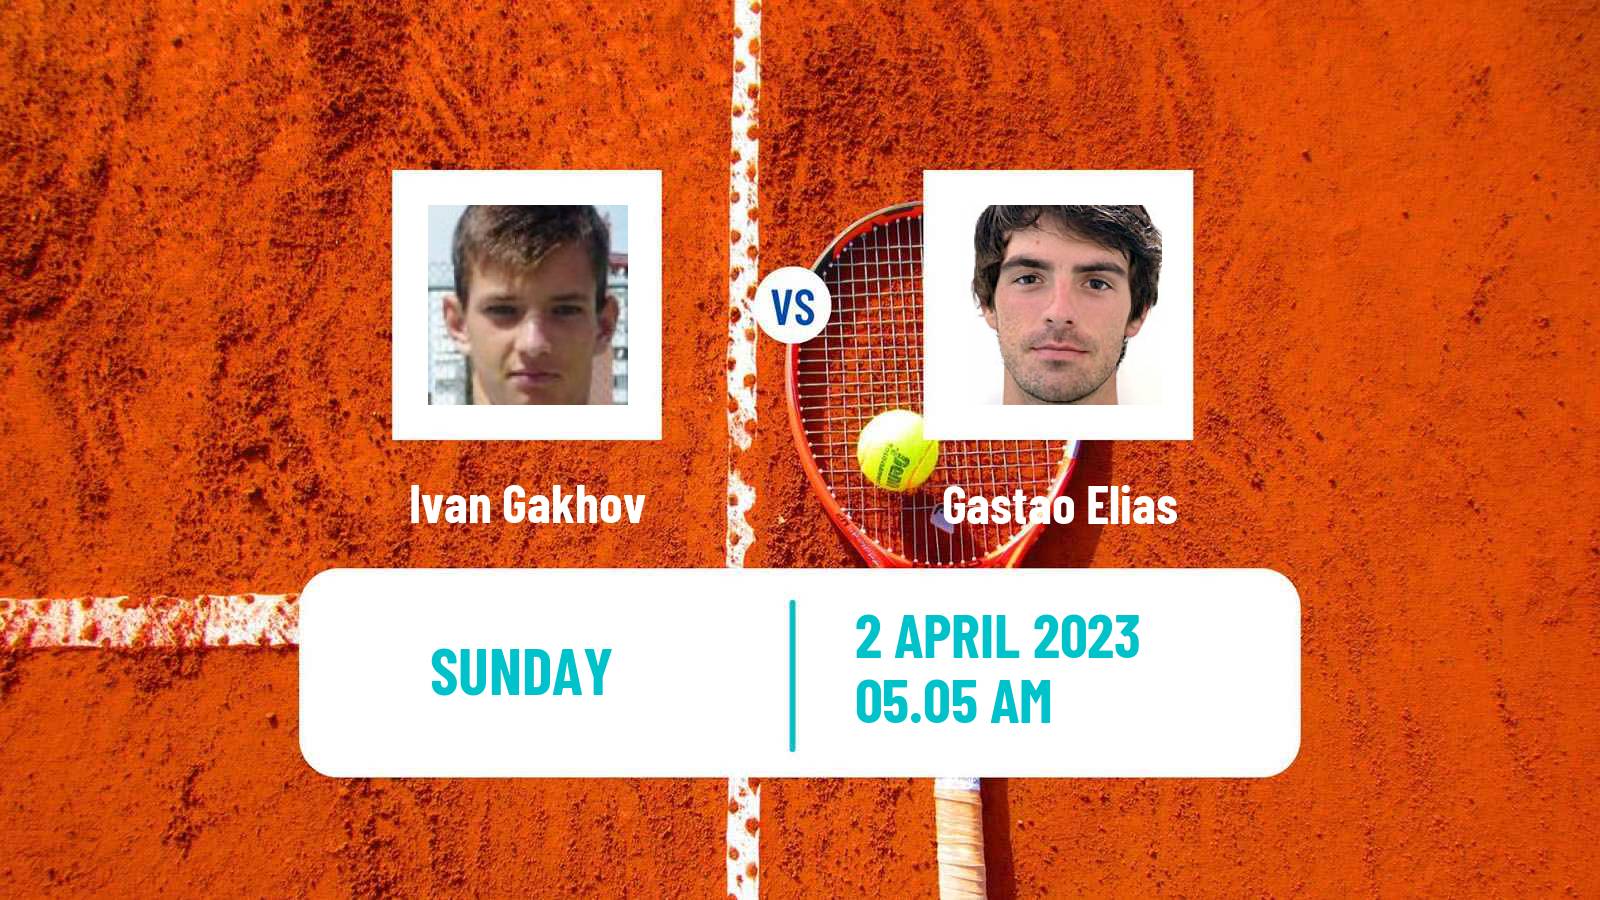 Tennis ATP Challenger Ivan Gakhov - Gastao Elias